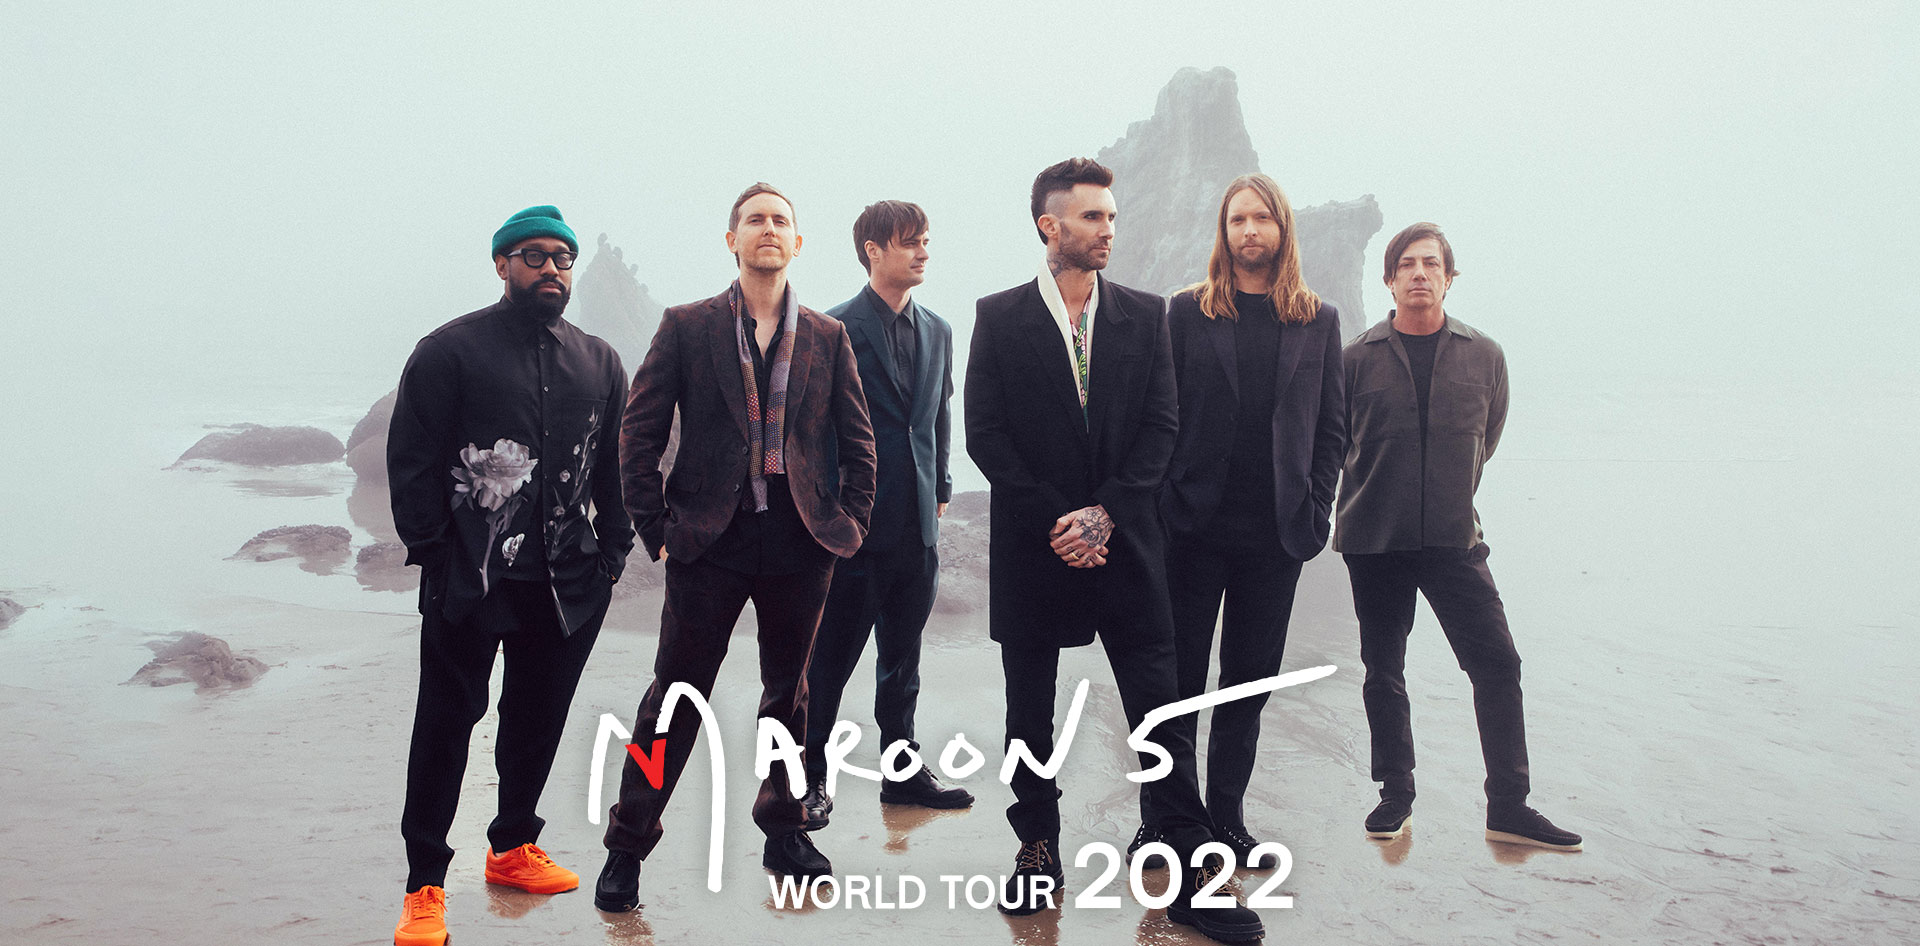 マルーン5] Maroon 5 WORLD TOUR 2022 来日公演特設サイト